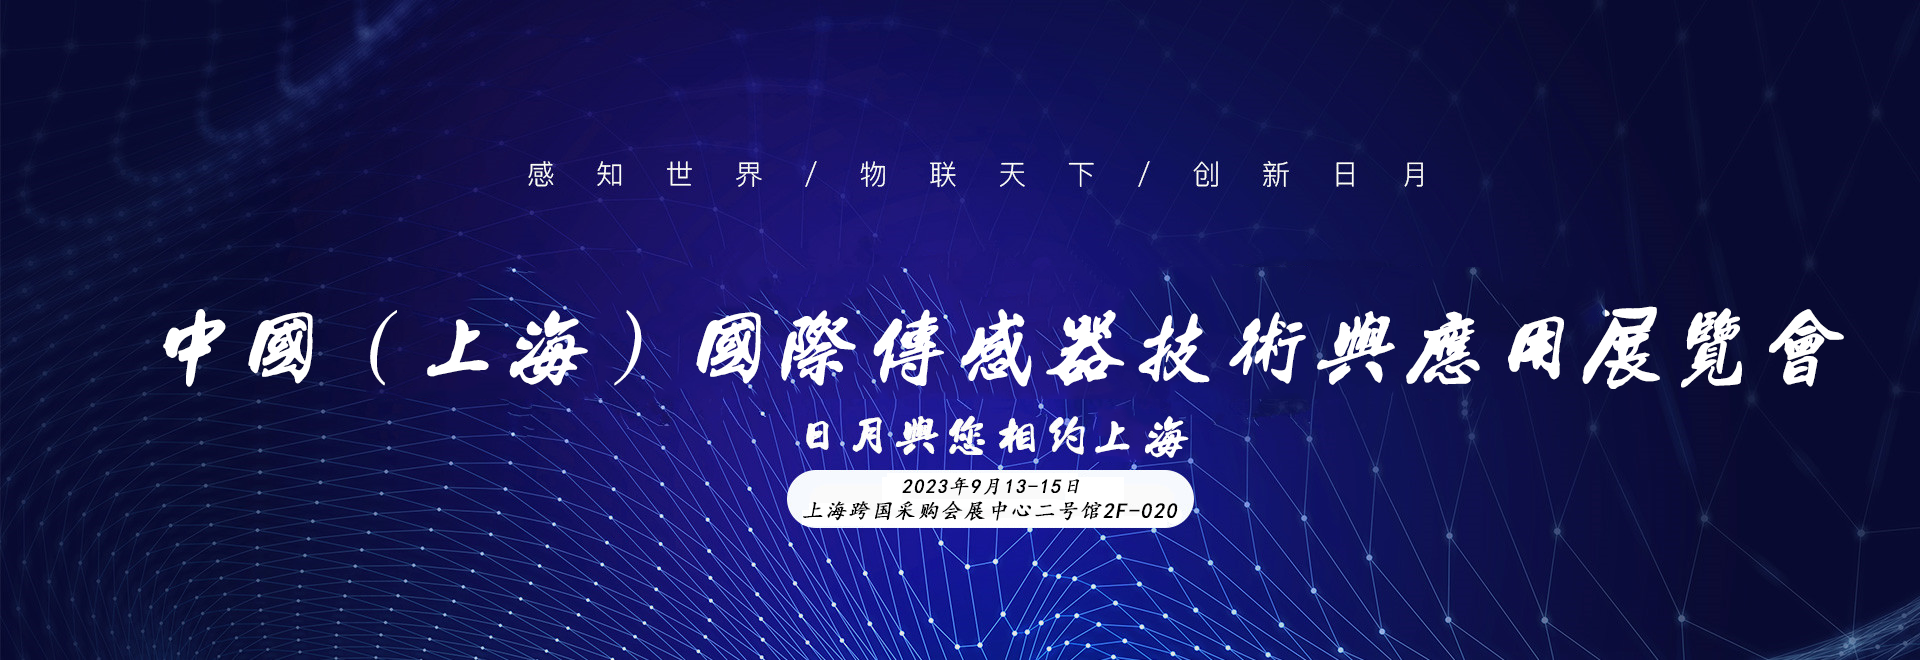 上海國際傳感器技術與應用展覽會